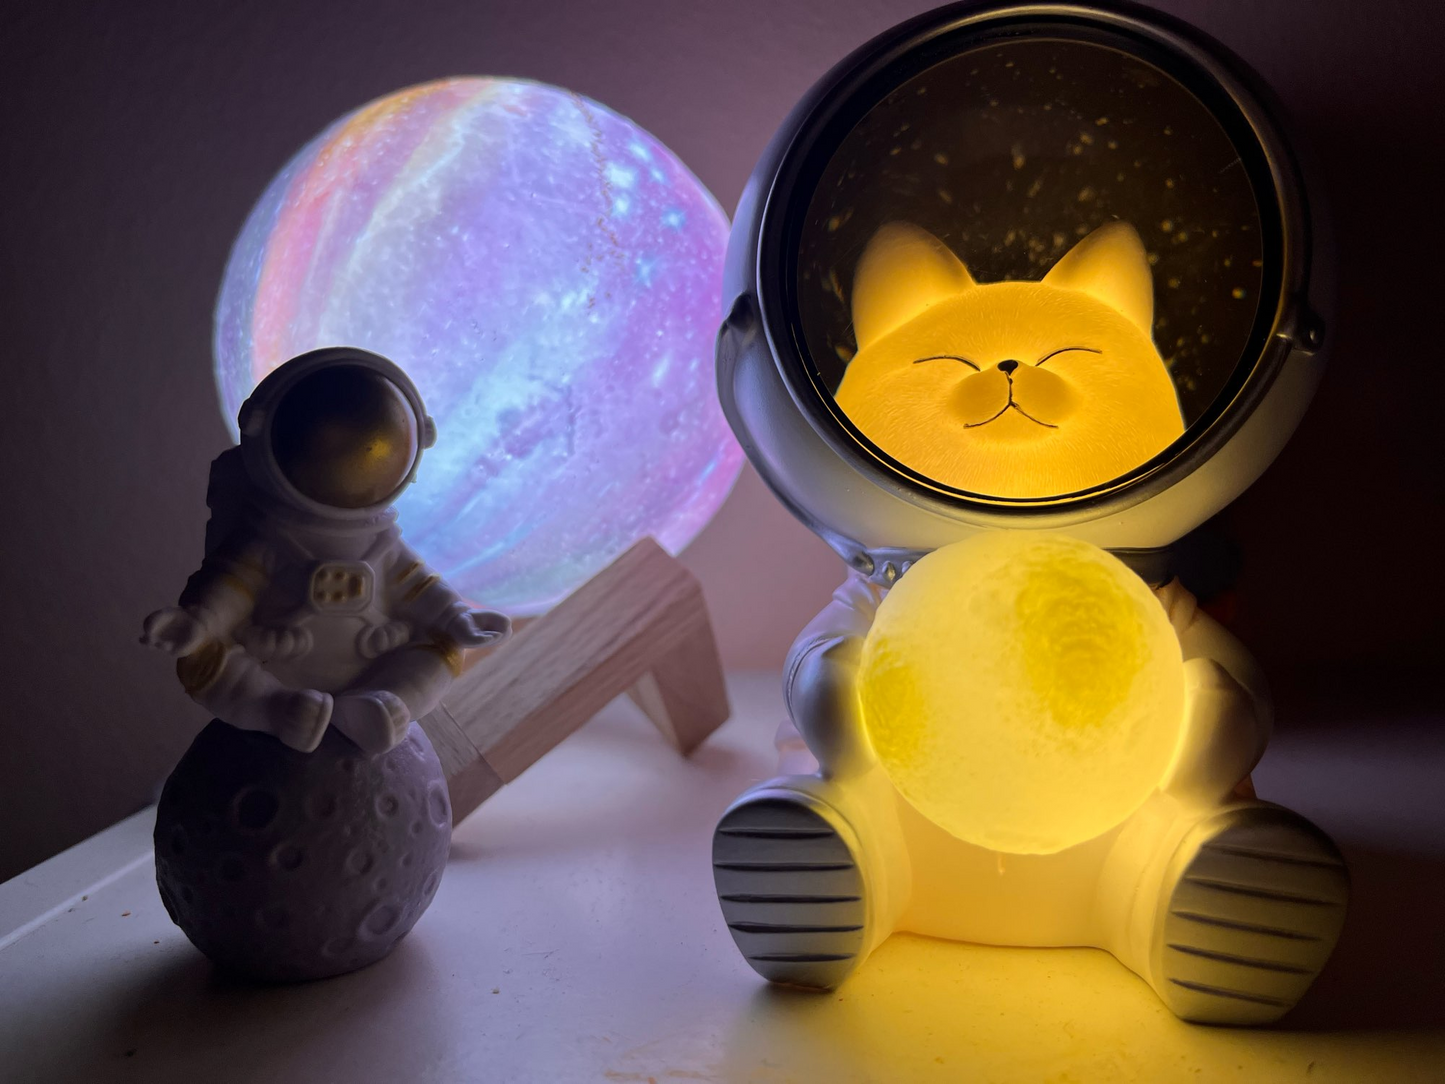 Creative Galaxy Cat Night Light